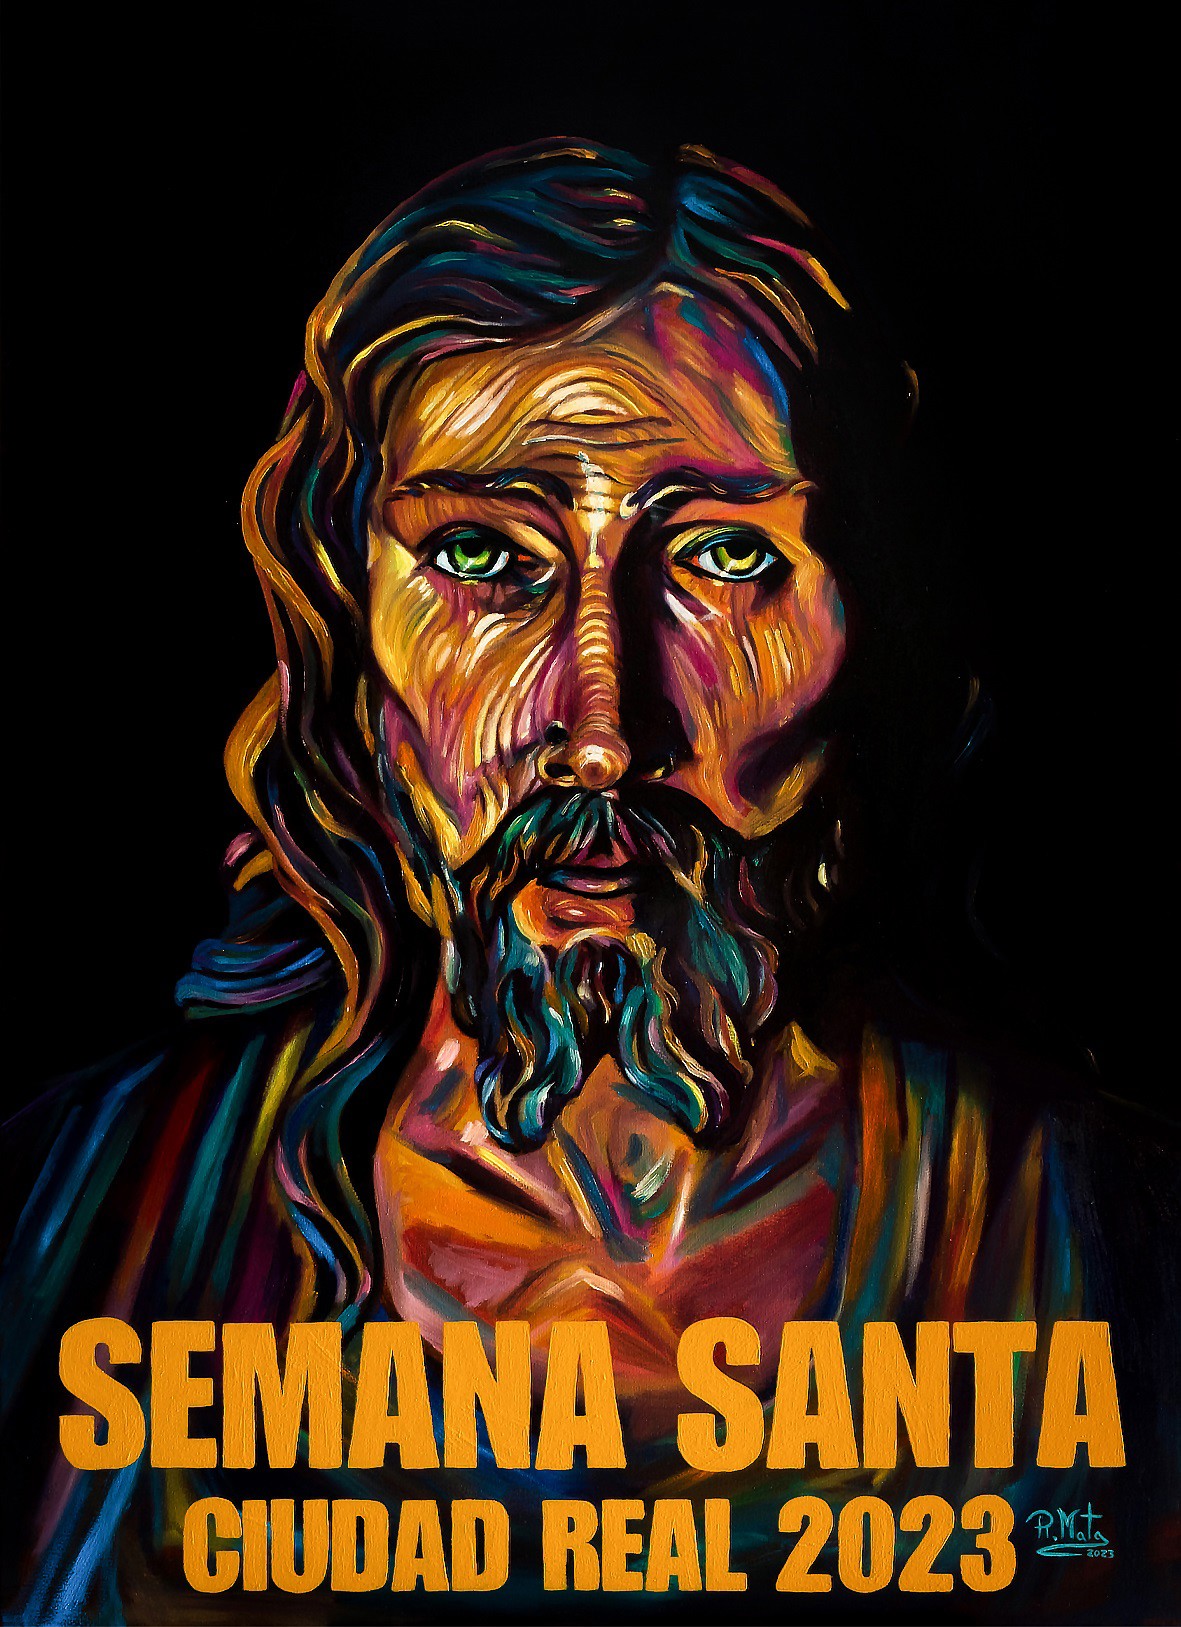 El Cristo de la Santa Cena es la imagen del cartel oficial de la Semana Santa de Ciudad Real 2023.